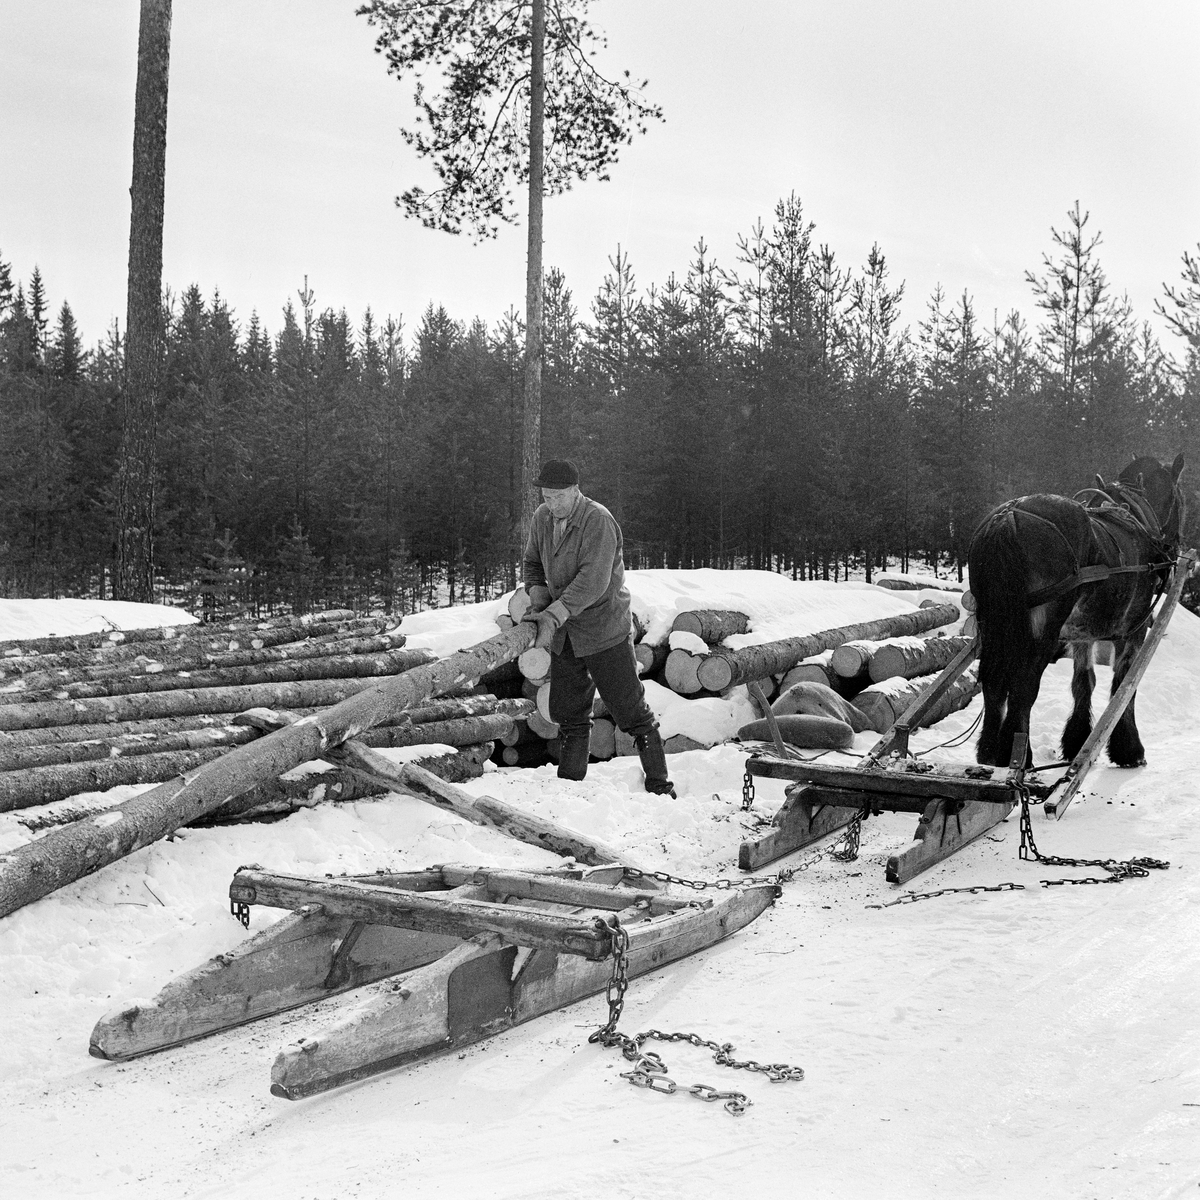 Jørgen Larsen (1919-1988) fra Hernes i Elverum lesser grantømmer i Stavåsen vinteren 1971.  Bildet viser hvordan tømmerkjøreren fikk stokkene opp på tømmerlunna ved å bruke ei såkalt «kjerring», «lassmerr» eller «lesseknekt», en stokk det er hogd hakk i, og som er lagt skrått mot lunnas midtparti. Hakkene i denne stokken ble brukt som anleggs- og vippepunkter når tømmeret skulle opp på toppen av lunna.  Da dette fotografiet ble tatt arbeidet Jørgen Larsen med å få den siste stokken opp på lunna.  I forgrunnen står en tom tømmerrustning, en todelt tømmerslede.  Den bakerste sleden – «geita» – var litt kraftigere enn «bukken» foran, for det var den som skulle bære størstedelen av lasstyngden.  Bukken hadde en dreibar bank, som bidro til å gjøre doningen smidig på svingete og staupete kjøreveger i skogen.  Tømmerkjører Jørgen Larsen var kledd i vadmelsbukse og vindjakke.  Han hadde skjoldlue på hodet og langskaftete gummistøvler på beina. 